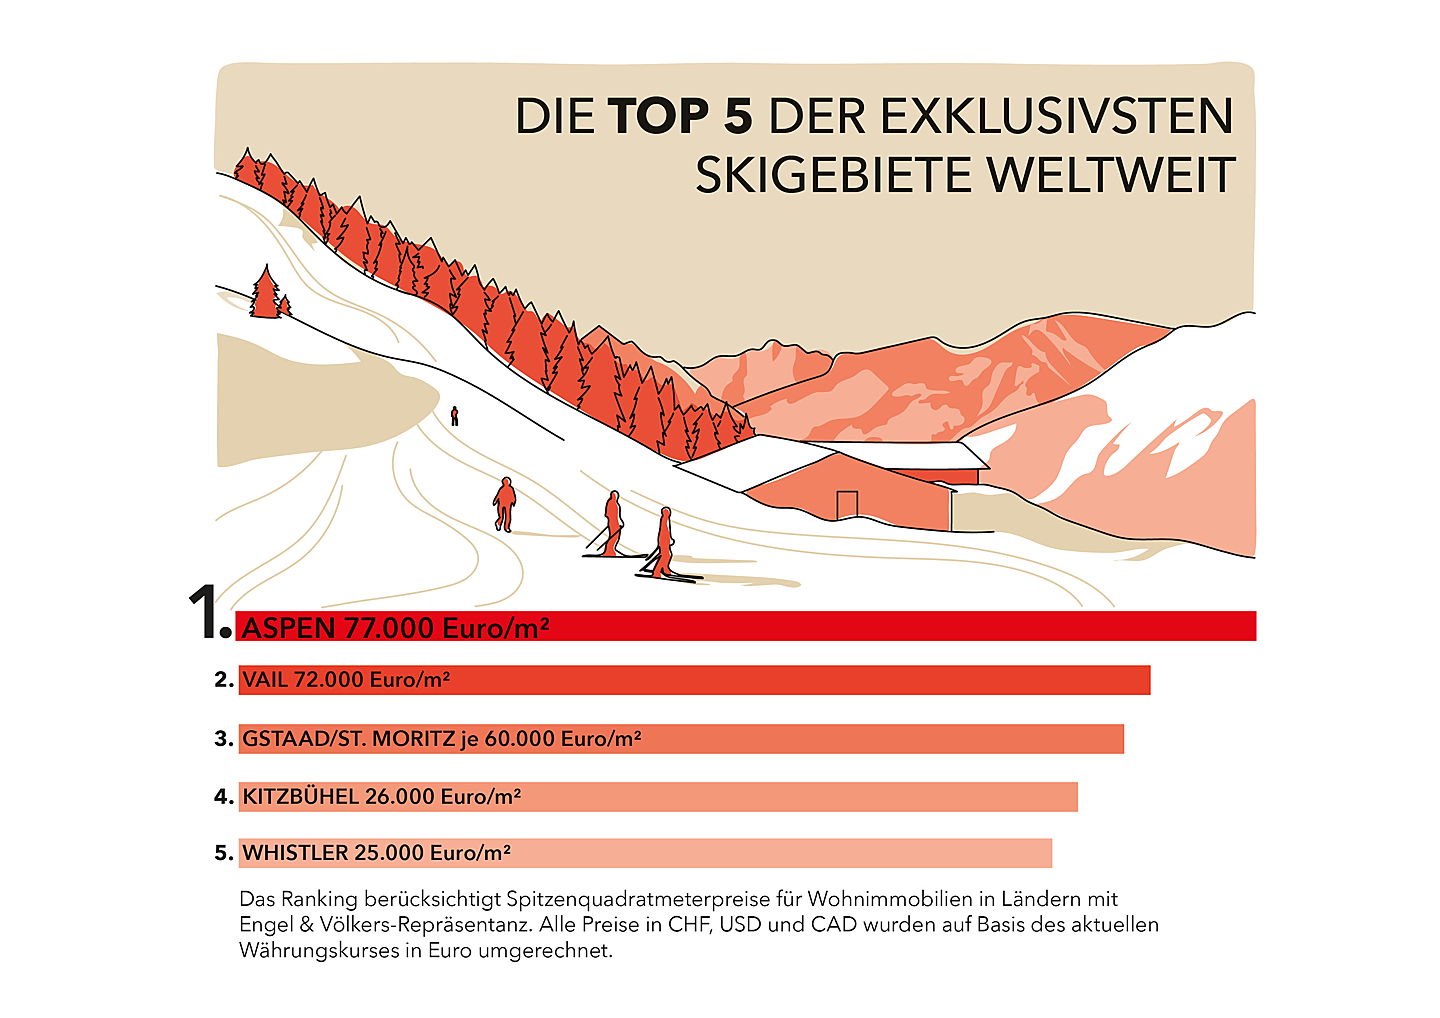  Zug
- Engel & Völkers Ski-Ranking 2022/23: Die Top 5 der exklusivsten Skigebiete weltweit.
(Bildquelle: Engel & Völkers)